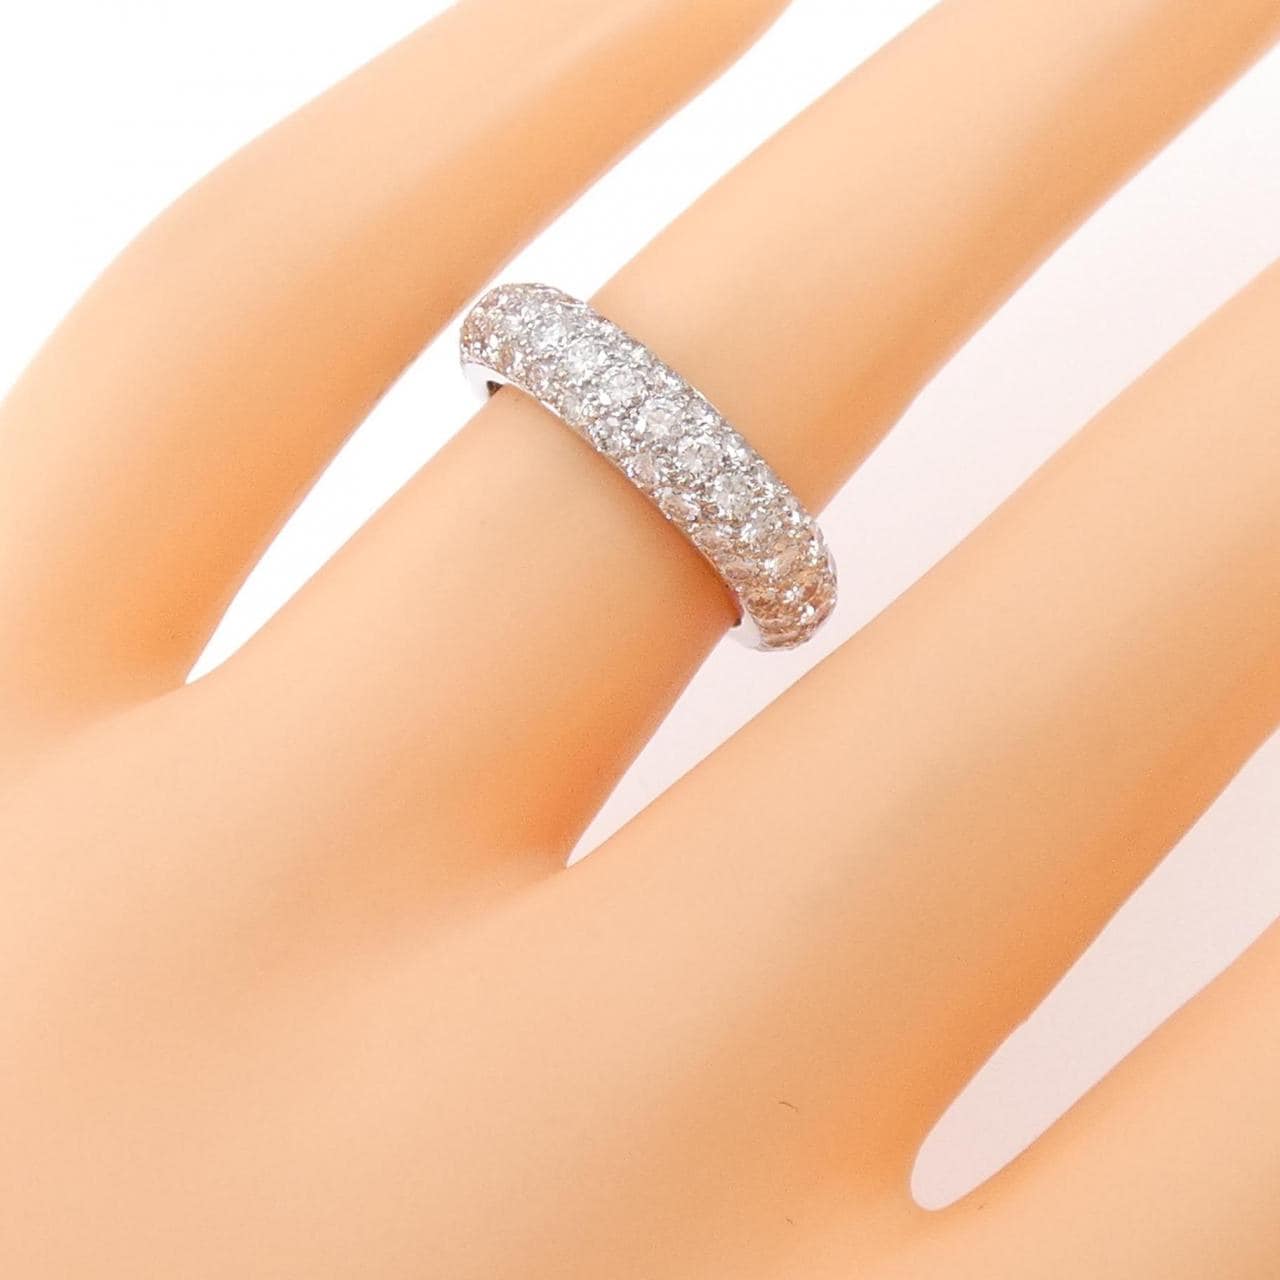 Cartier Diamond ring